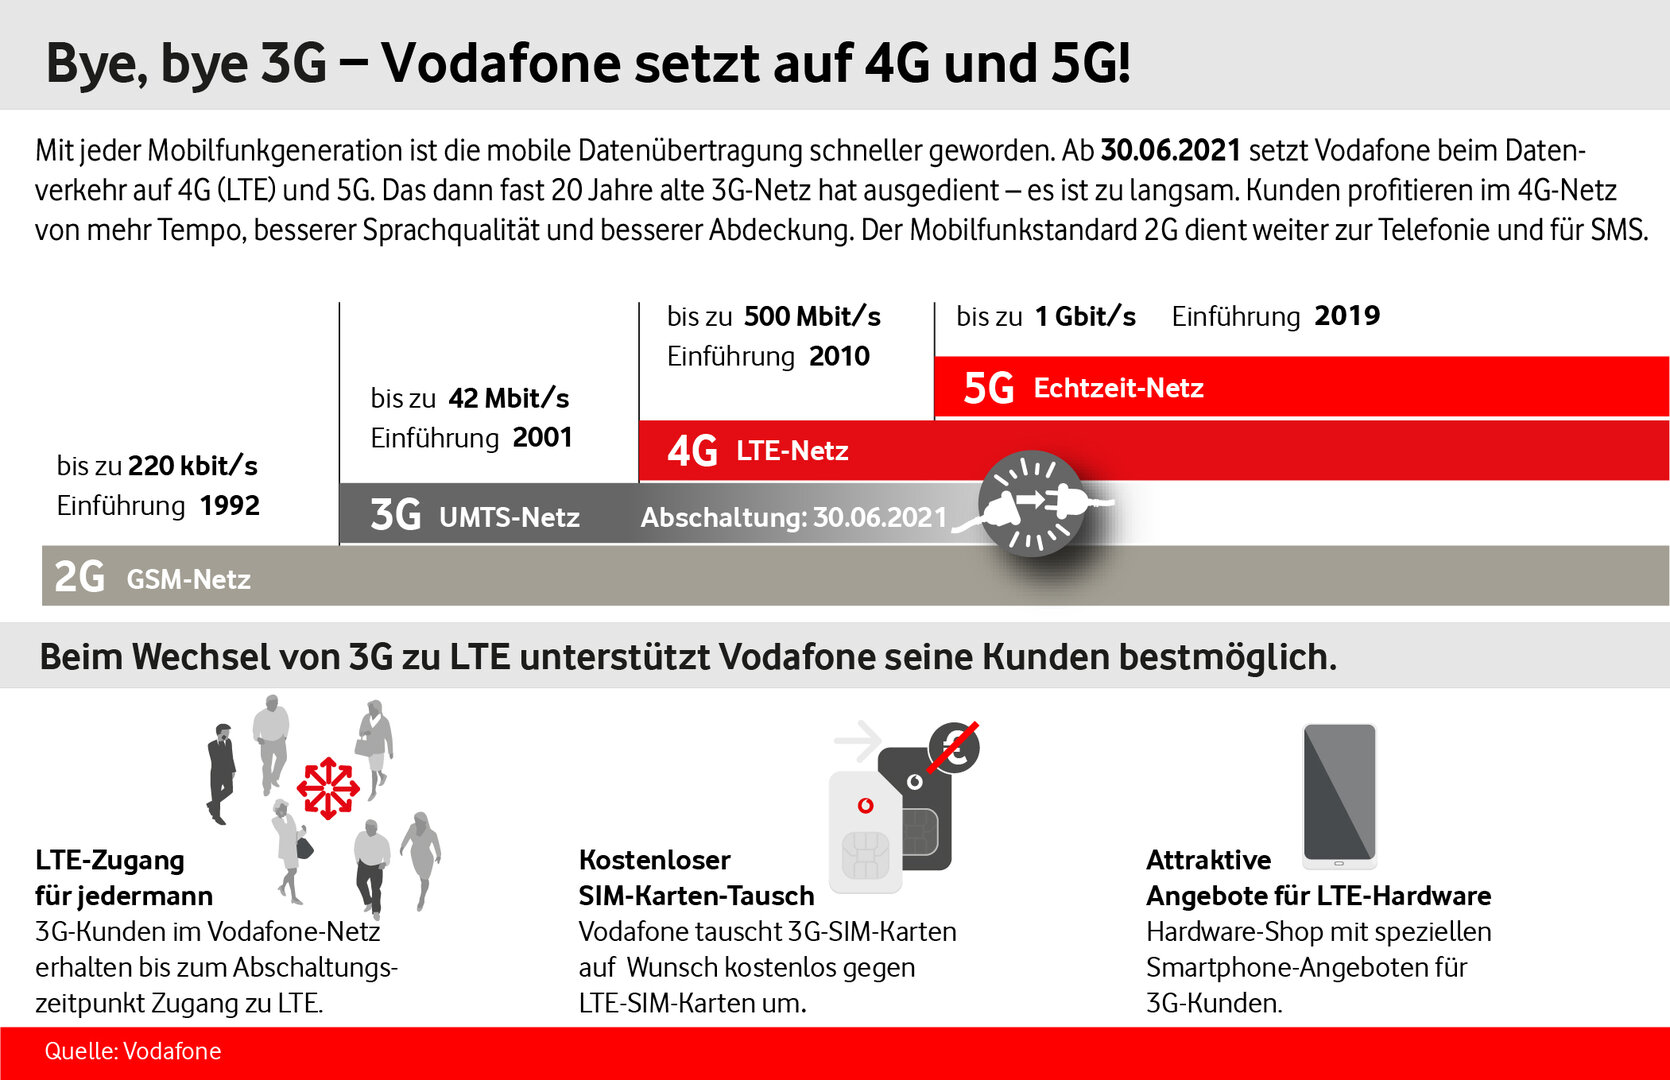 Das künftige Mobilfunknetz von Vodafone